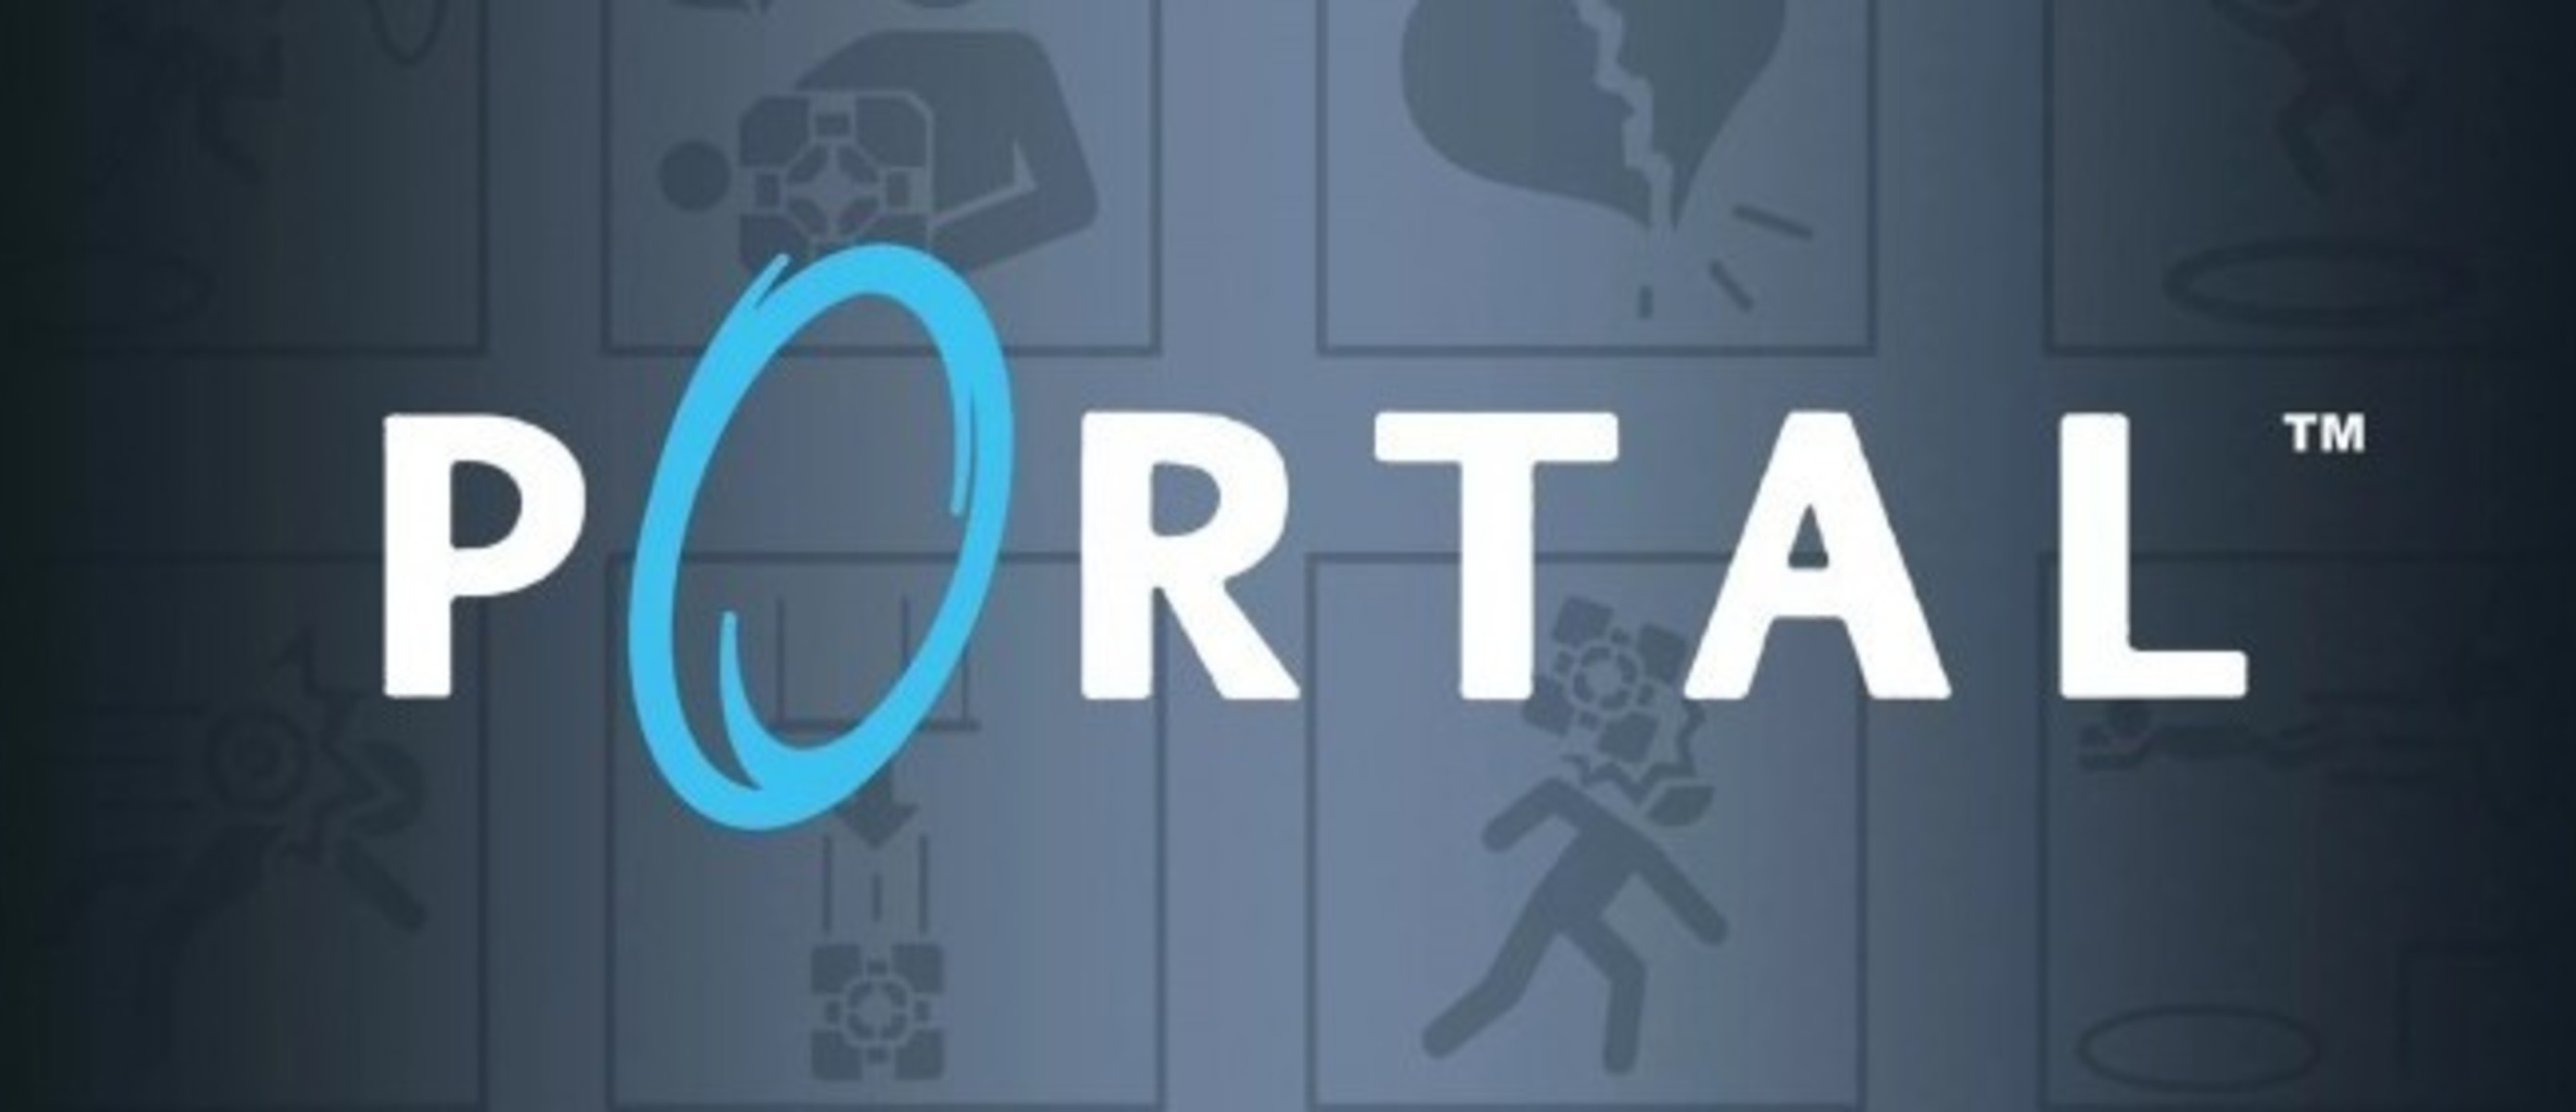 Портал 1 бит. Portal 1 игра. Портал 1 часть. Portal обложка. Портал 1 обложка.